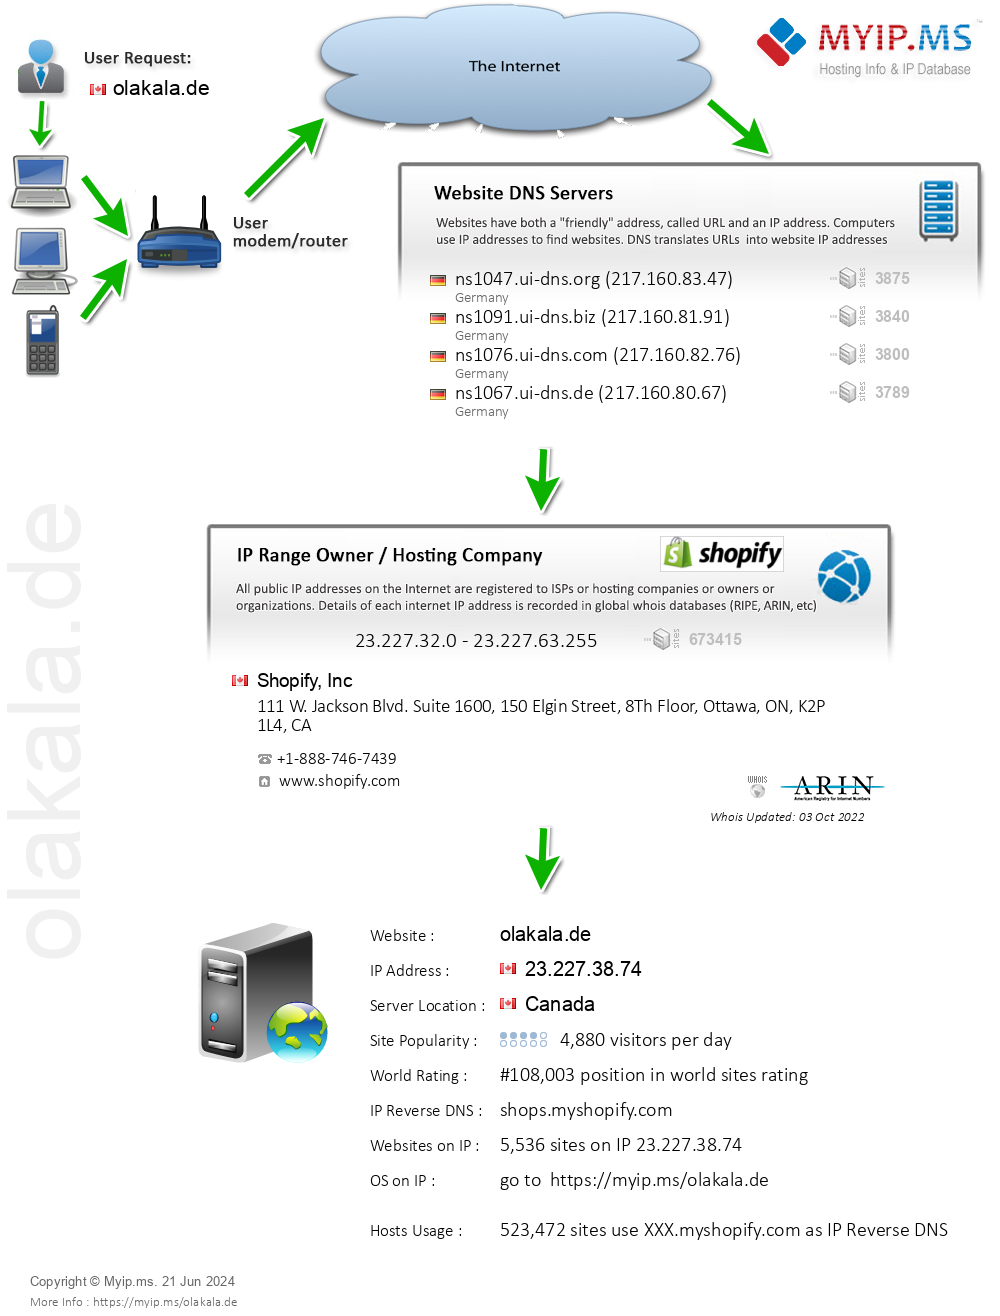 Olakala.de - Website Hosting Visual IP Diagram